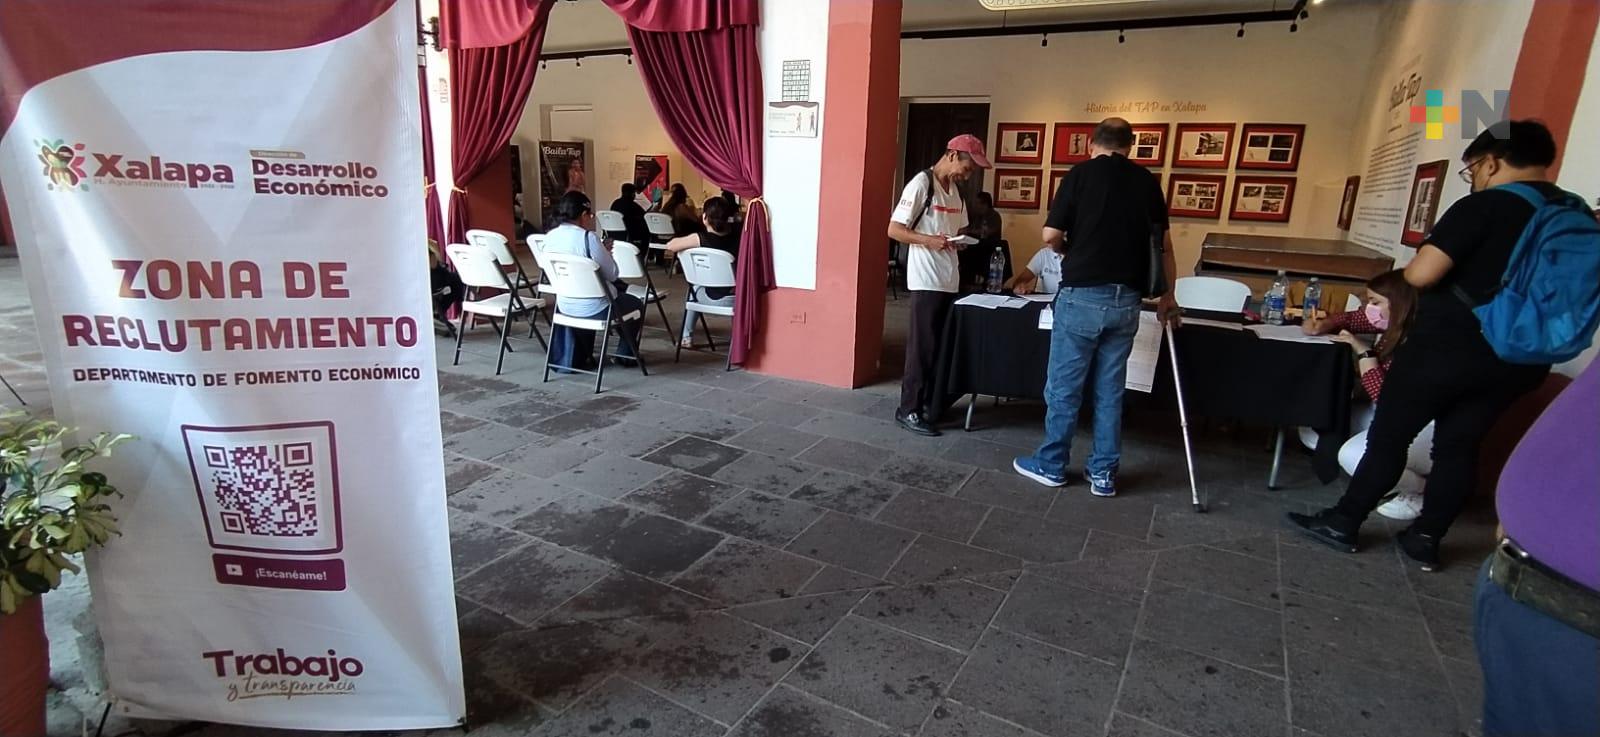 Al menos seis empresas ofrecieron empleos a través del ayuntamiento de Xalapa